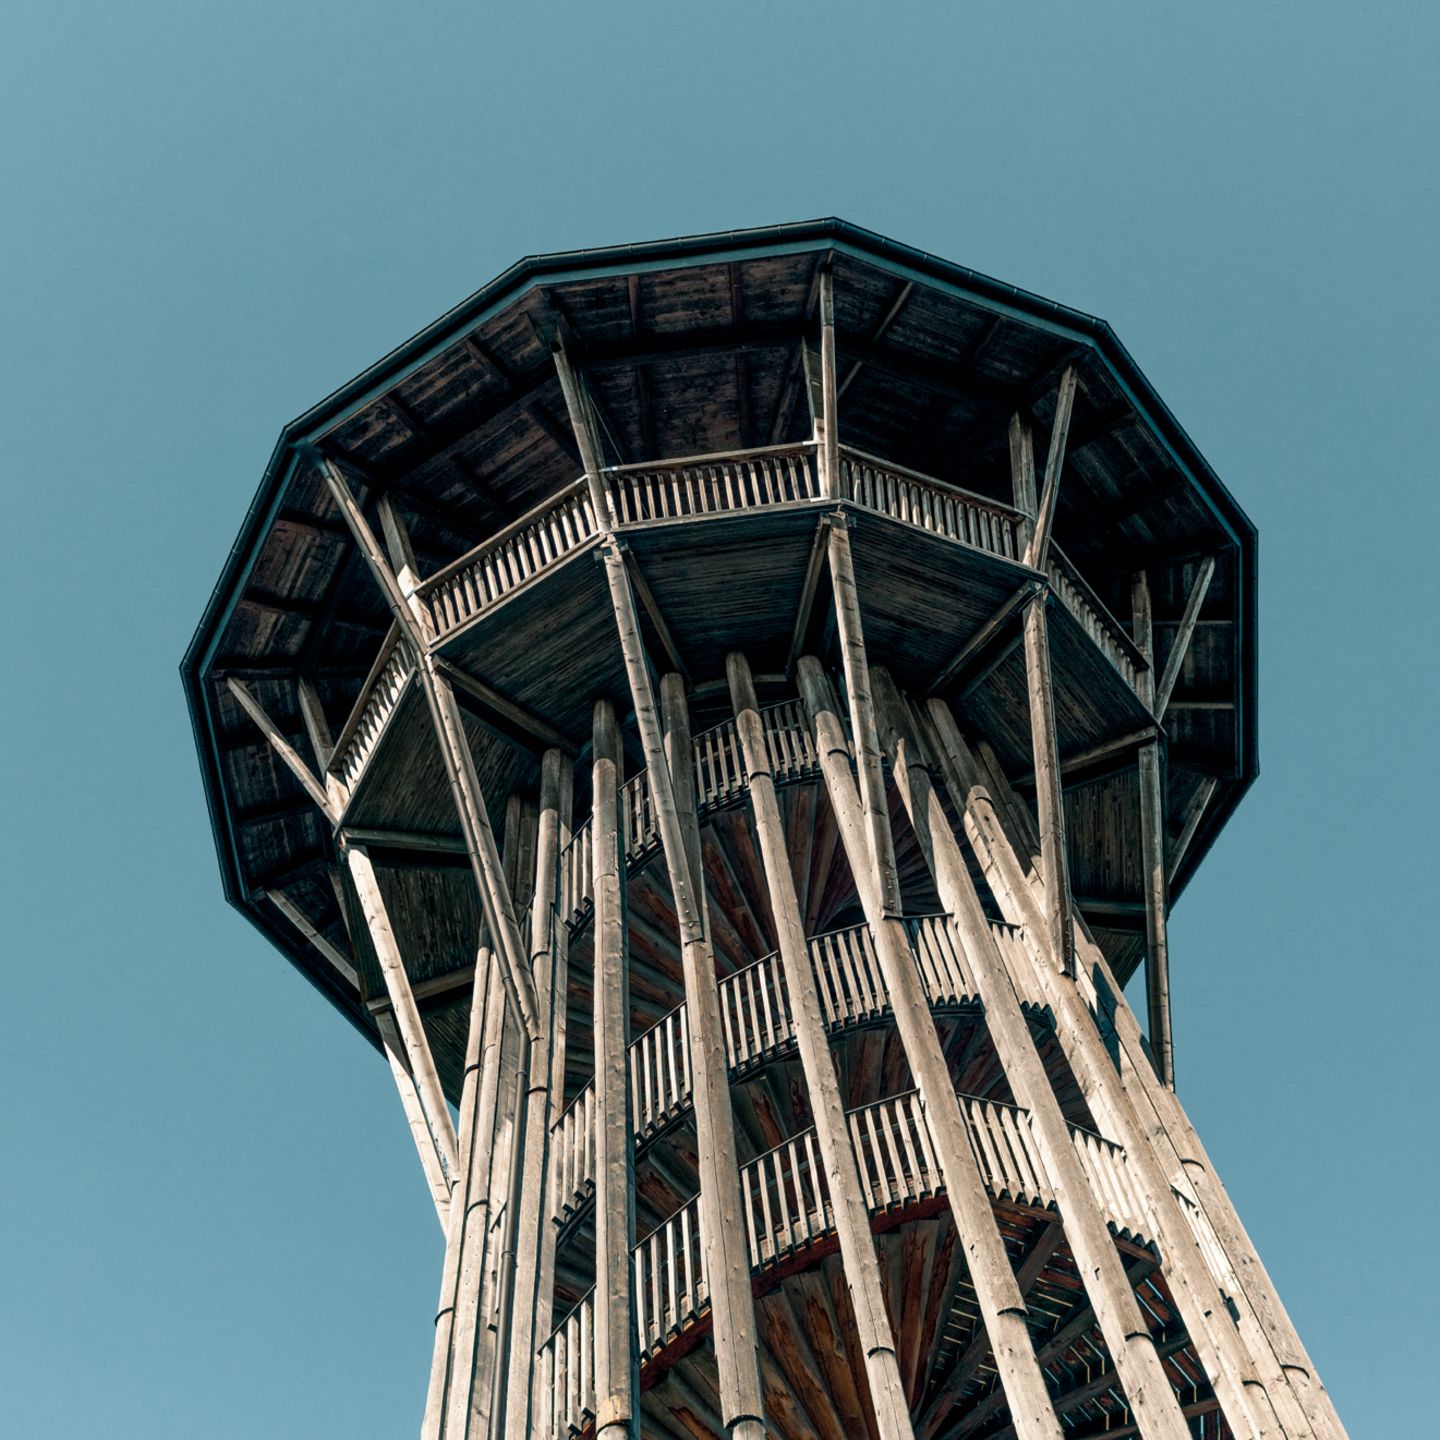 Ganz in der Nähe von Lausanne schraubt sich der 35 Meter hohe Aussichtsturm von Sauvabelin in die Höhe. Seine Wendeltreppe wurde Leonardo da Vincis Aufgang im Château de Chambord, Frankreich, nachempfunden, der Ausblick ist spektakulär.